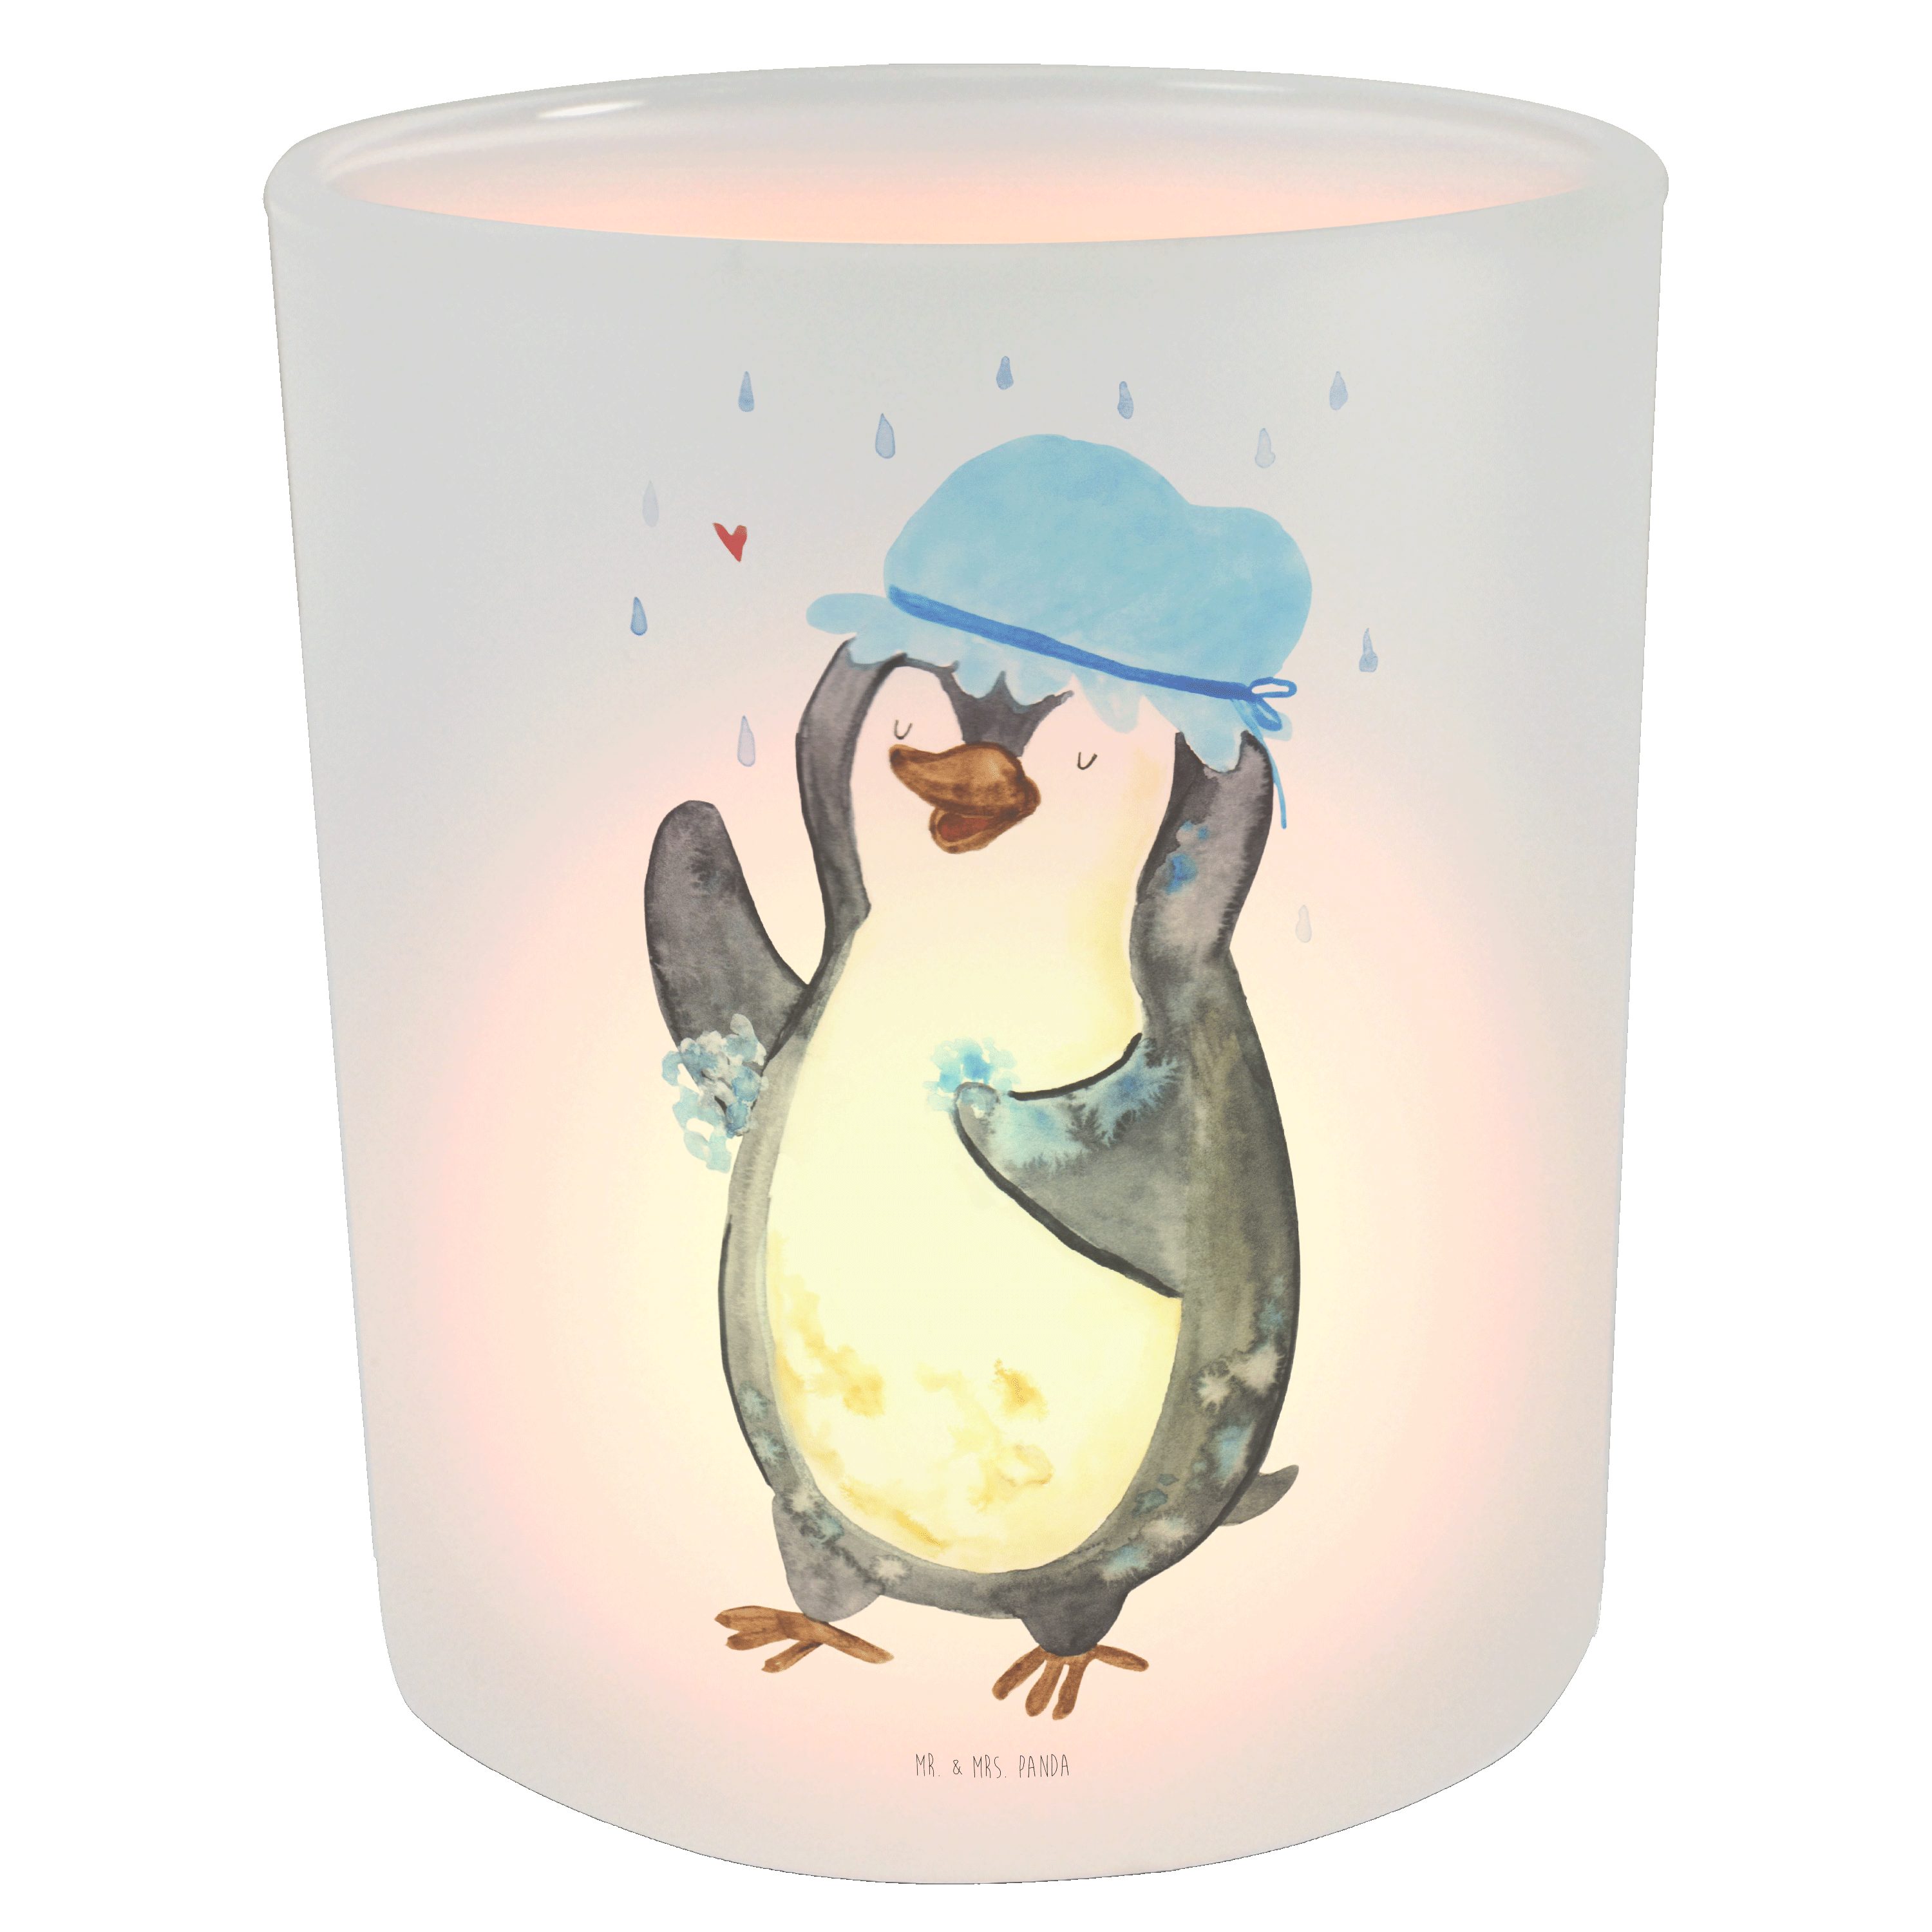 Mr. & Mrs. Panda Windlicht Pinguin duscht - Transparent - Geschenk, Kerzenglas, glücklich sein, (1 St)